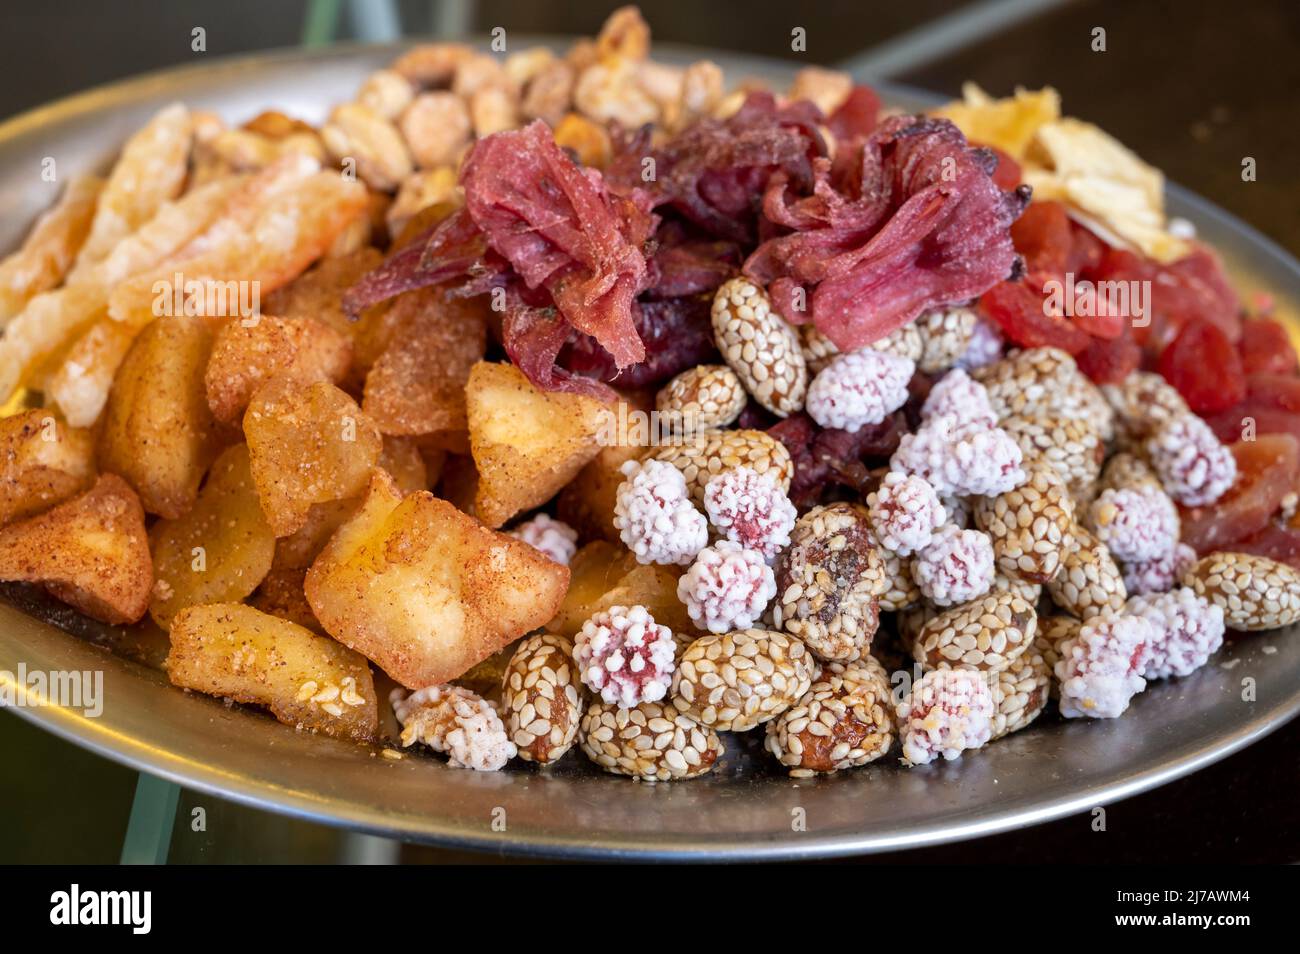 Dessert turc et du Moyen-Orient et amuse-gueule, assortiment de noix,  fruits secs et baies sur l'assiette Photo Stock - Alamy